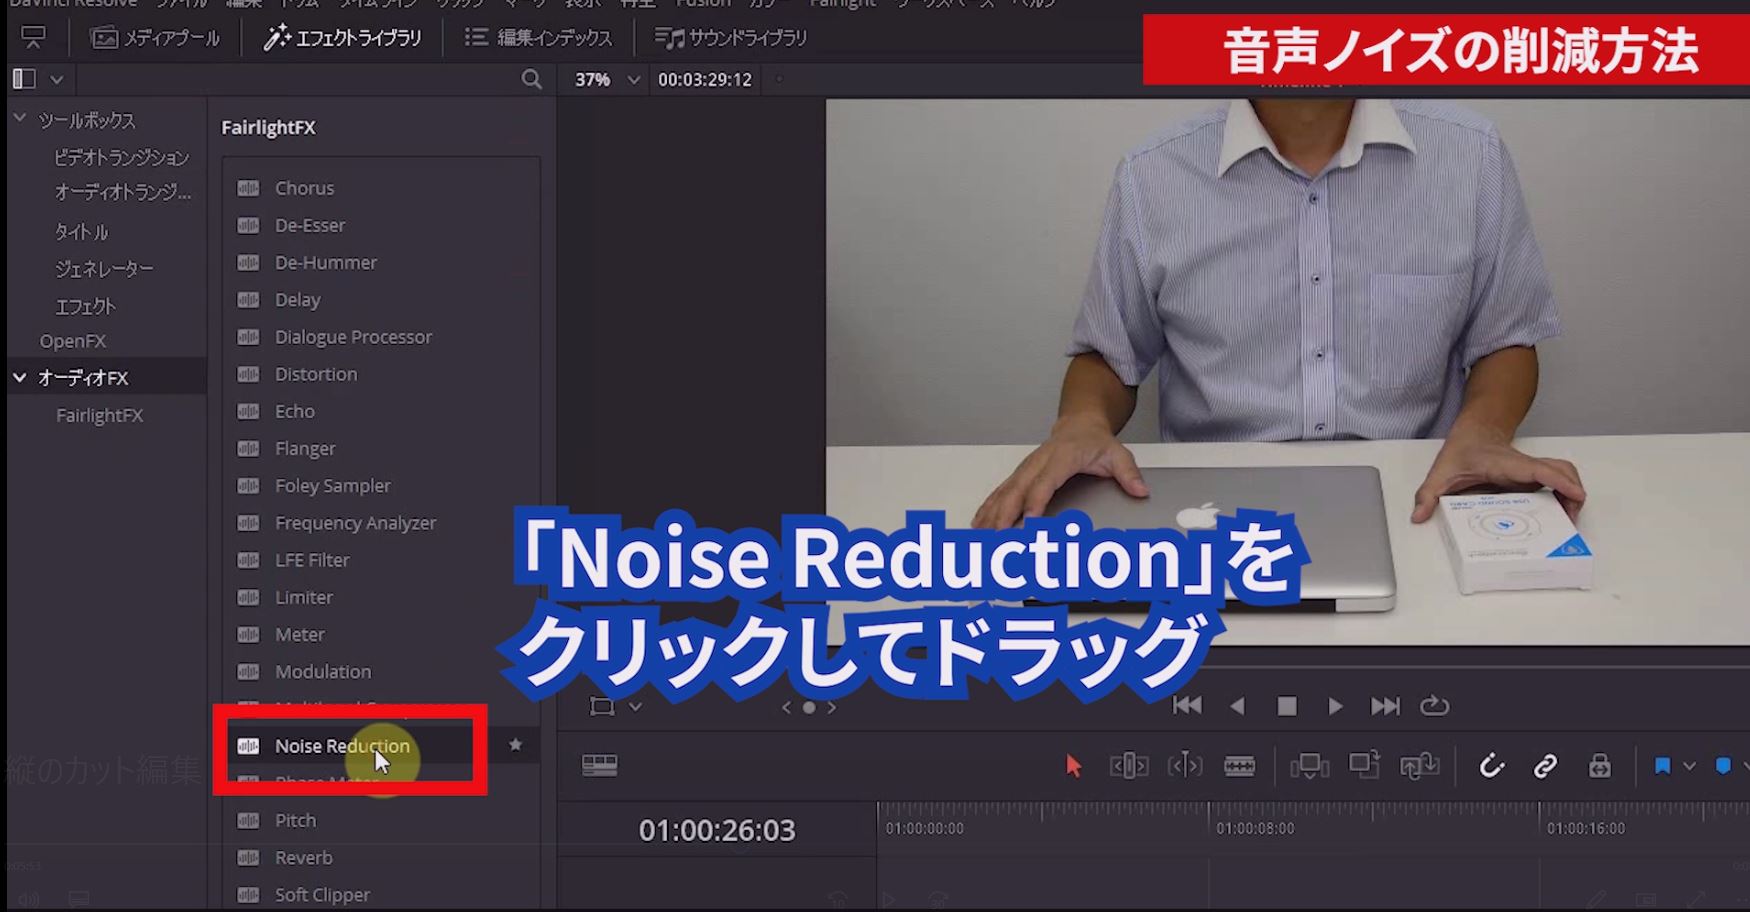 撮影した動画に入っている音声ノイズを削減します。 「エフェクトライブラリー」をクリックし、「オーディオFX」⇒「Noise Reduction」をクリックしたままドラッグしてタイムライン上の動画にドロップします。